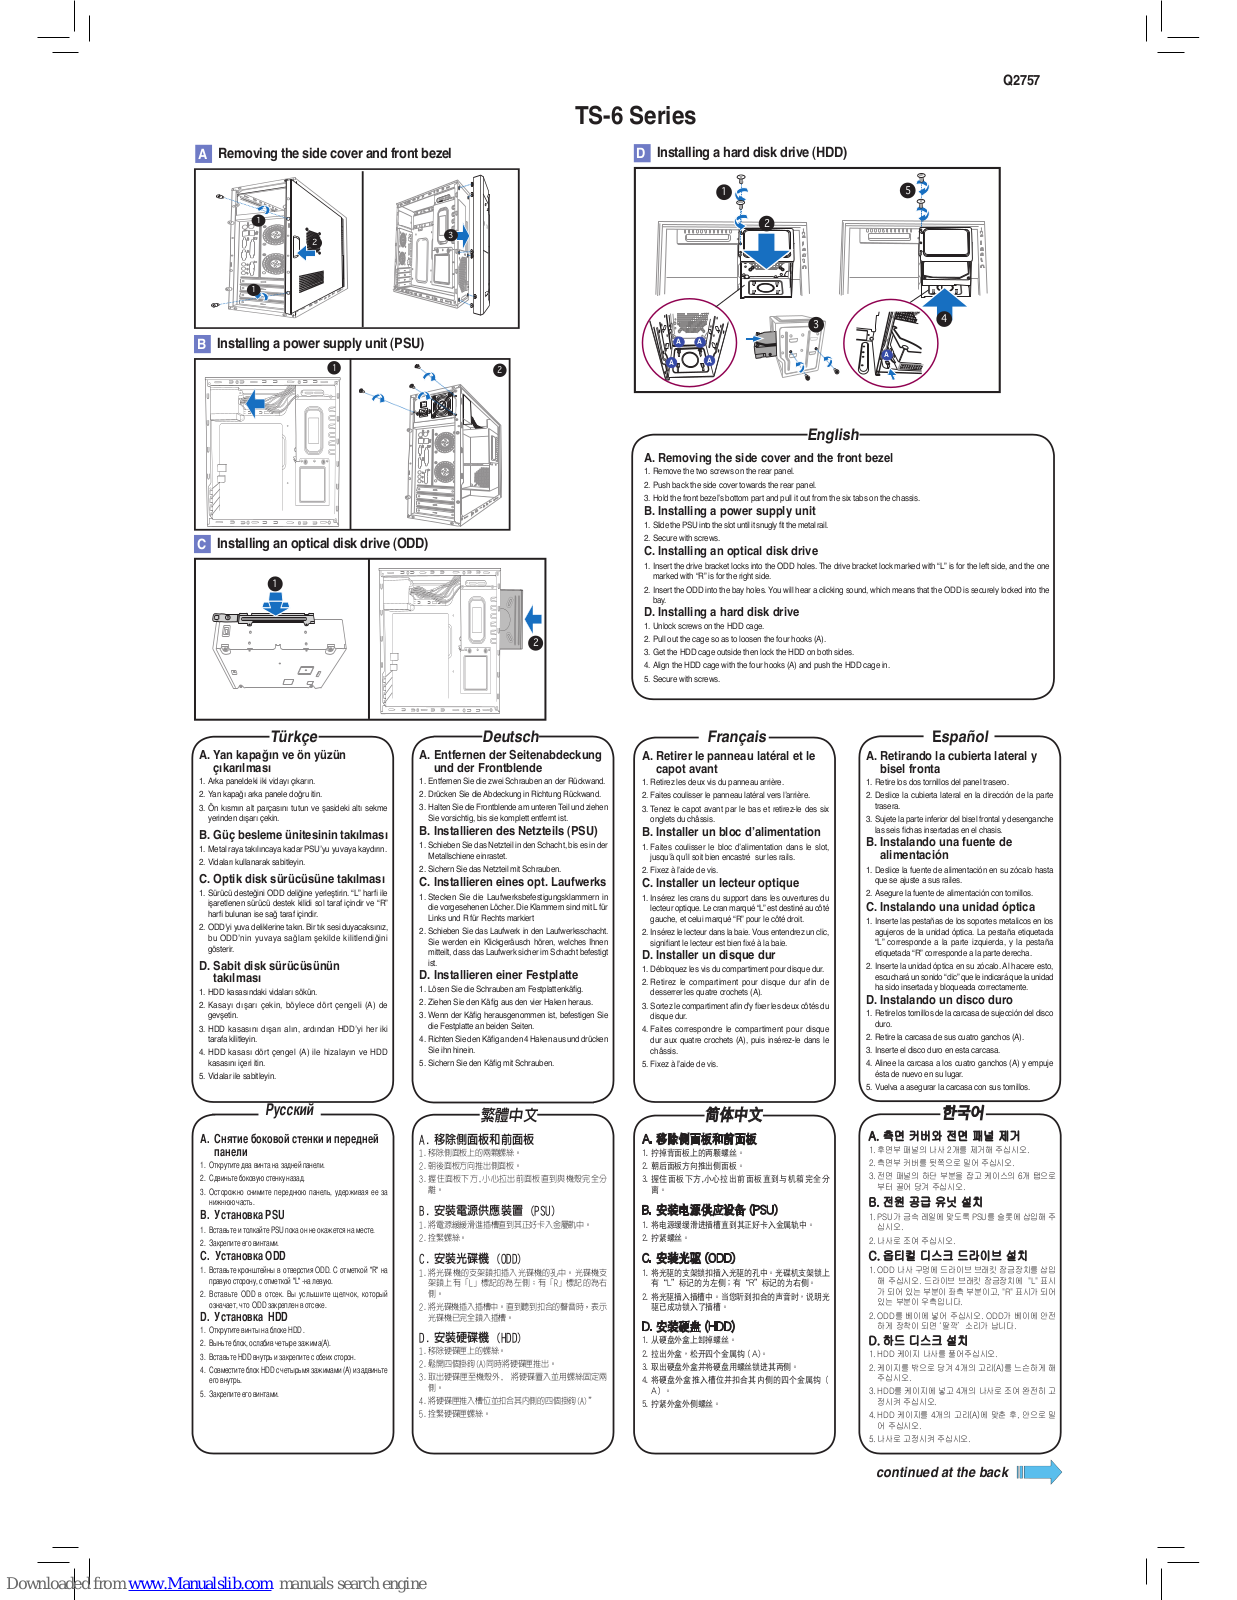 Asus TS-63, TS-6A User Manual